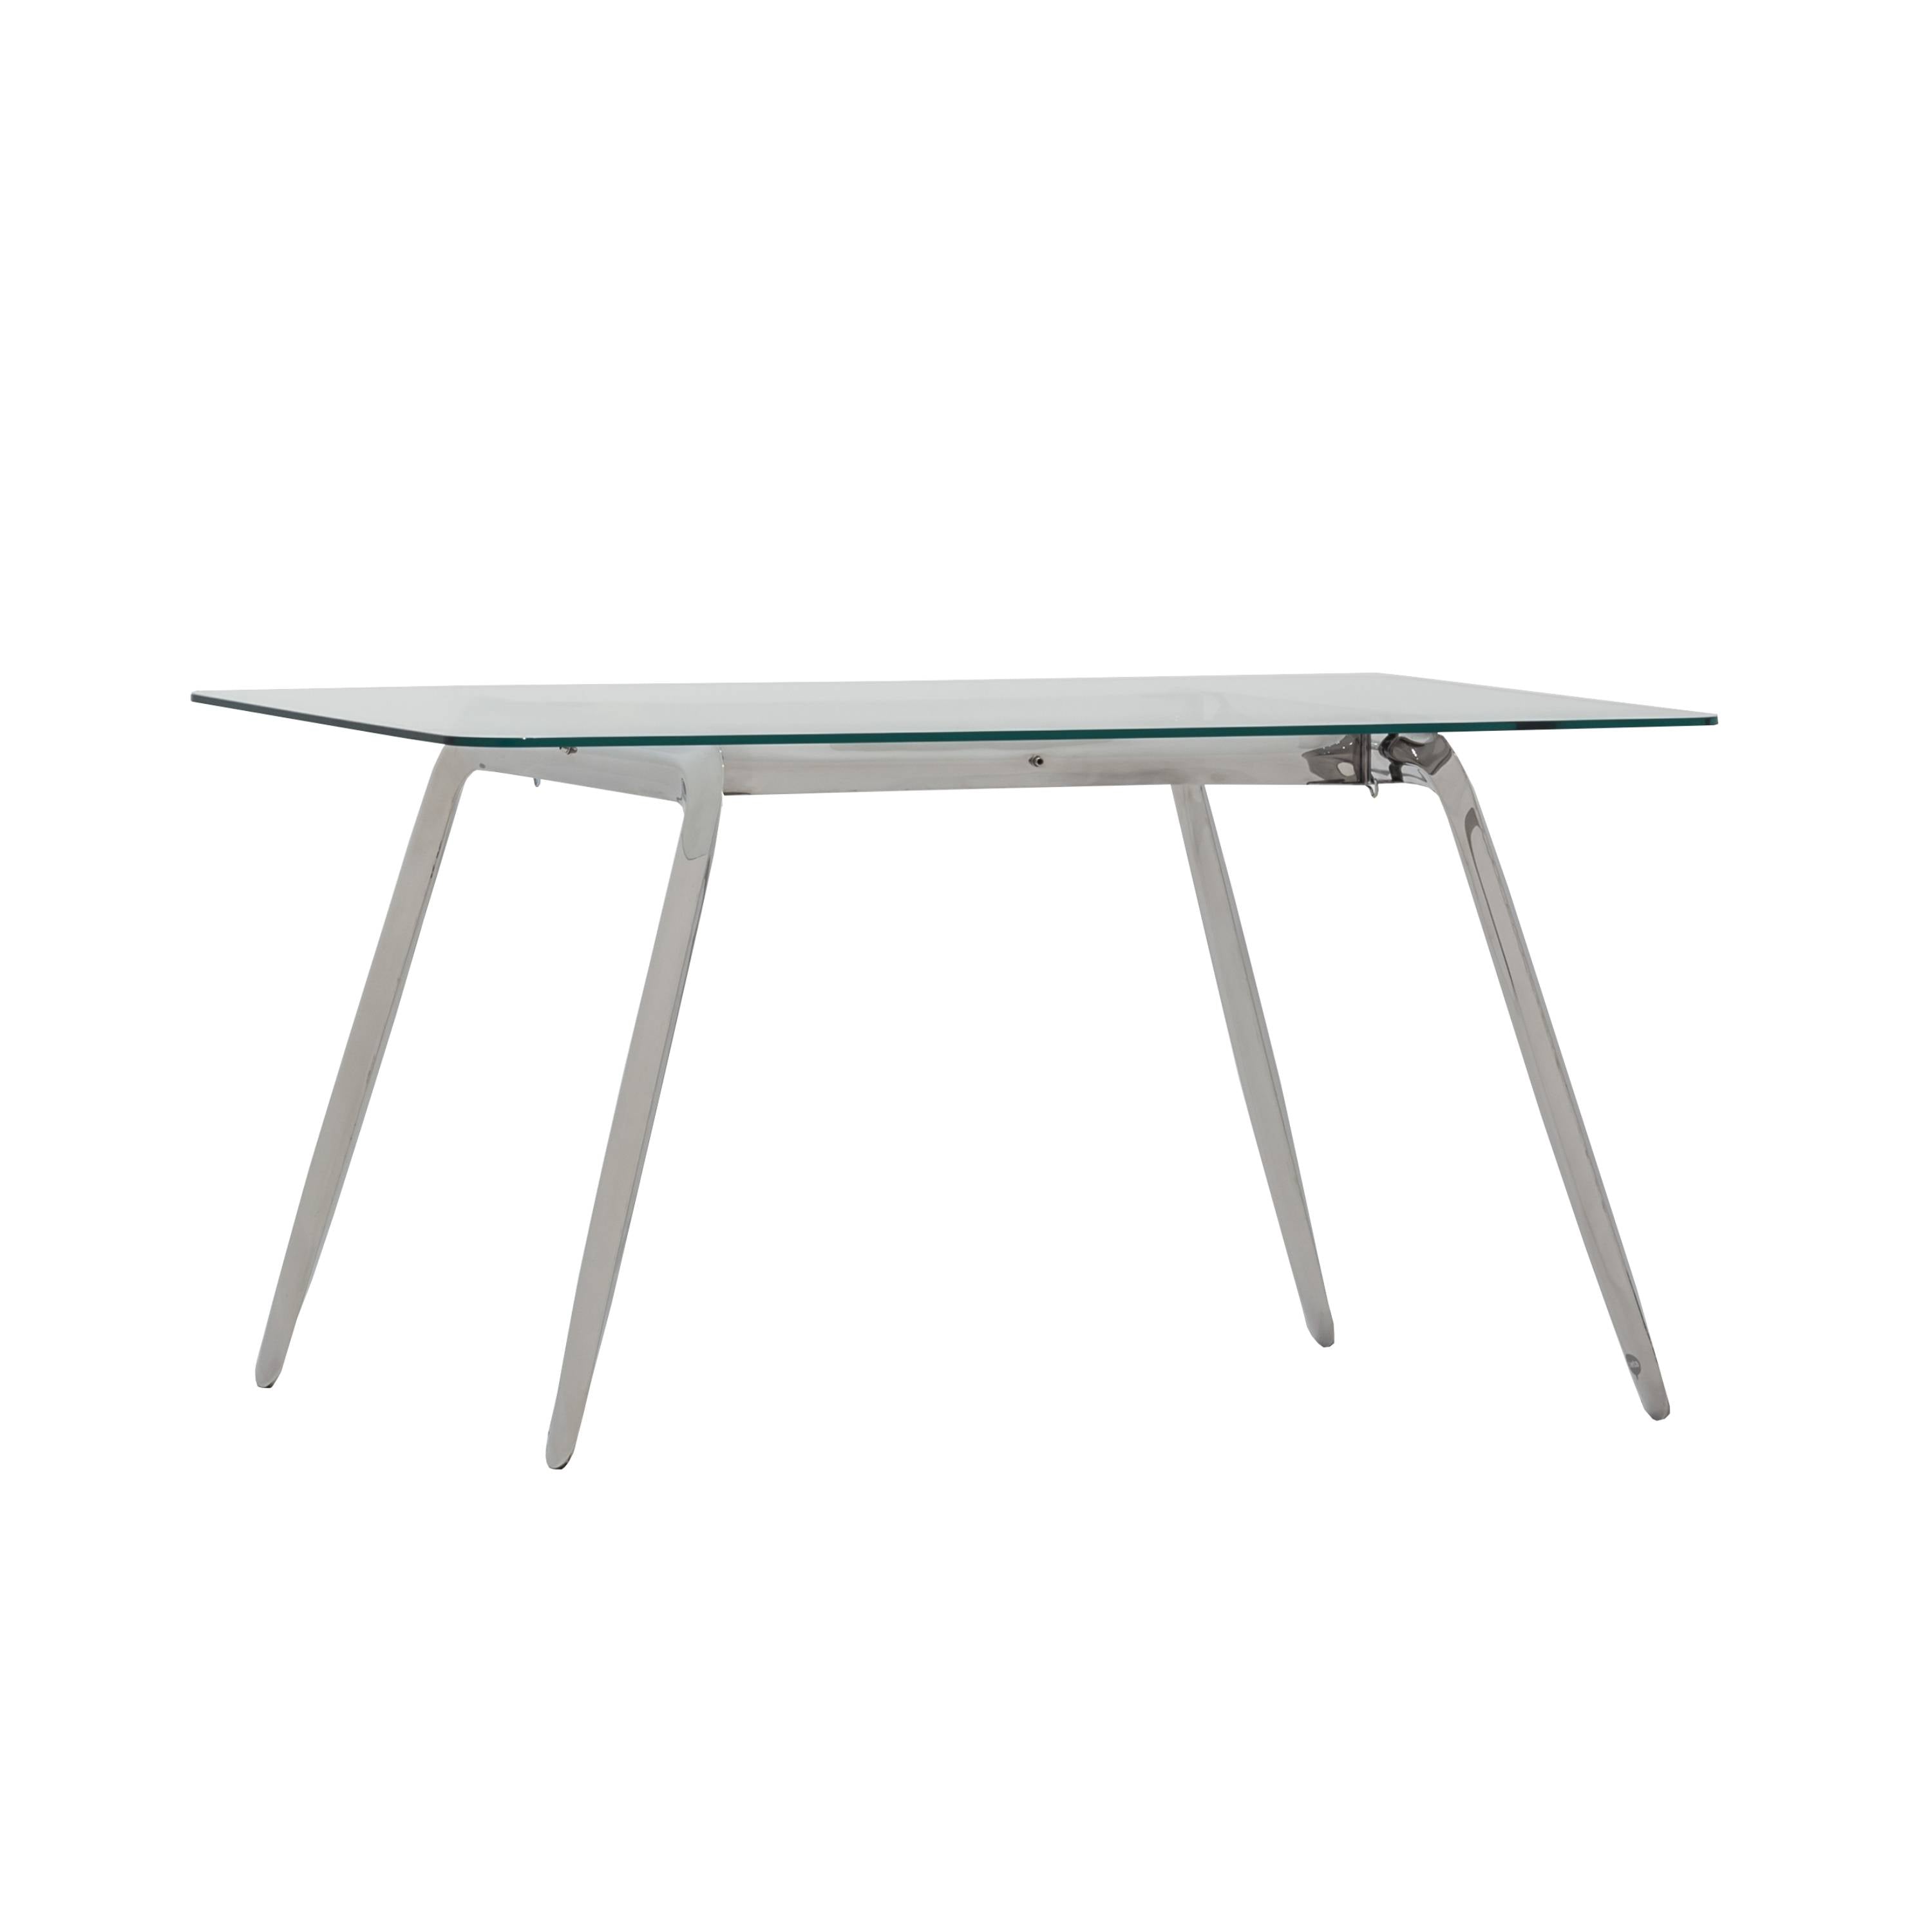 Koziol Table Frame: Inox Stainless Steel